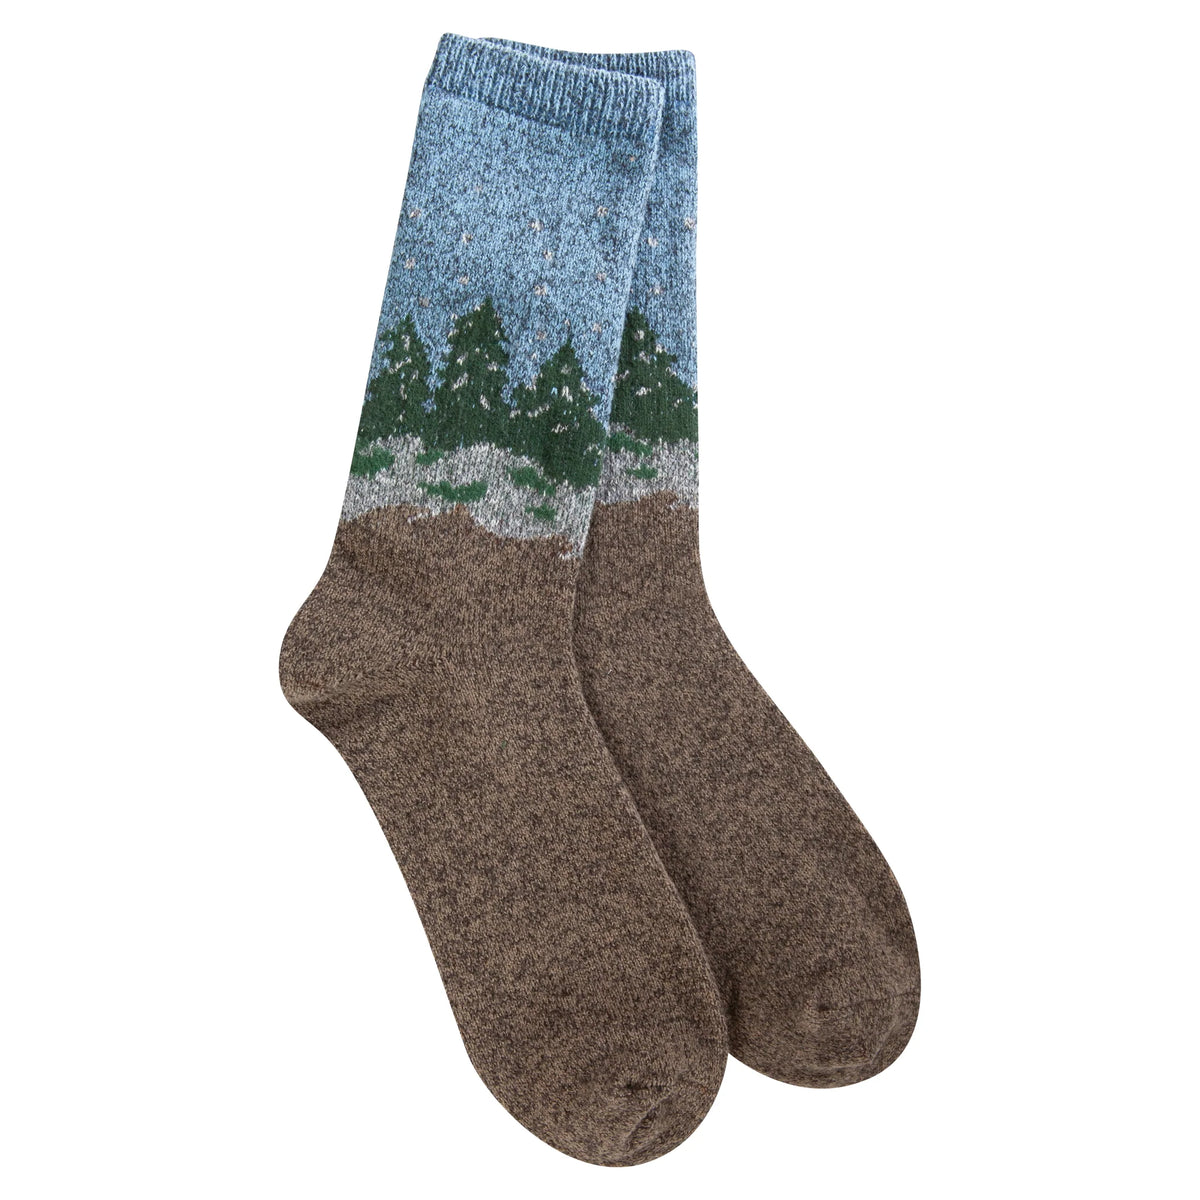 Holiday Christmas socks